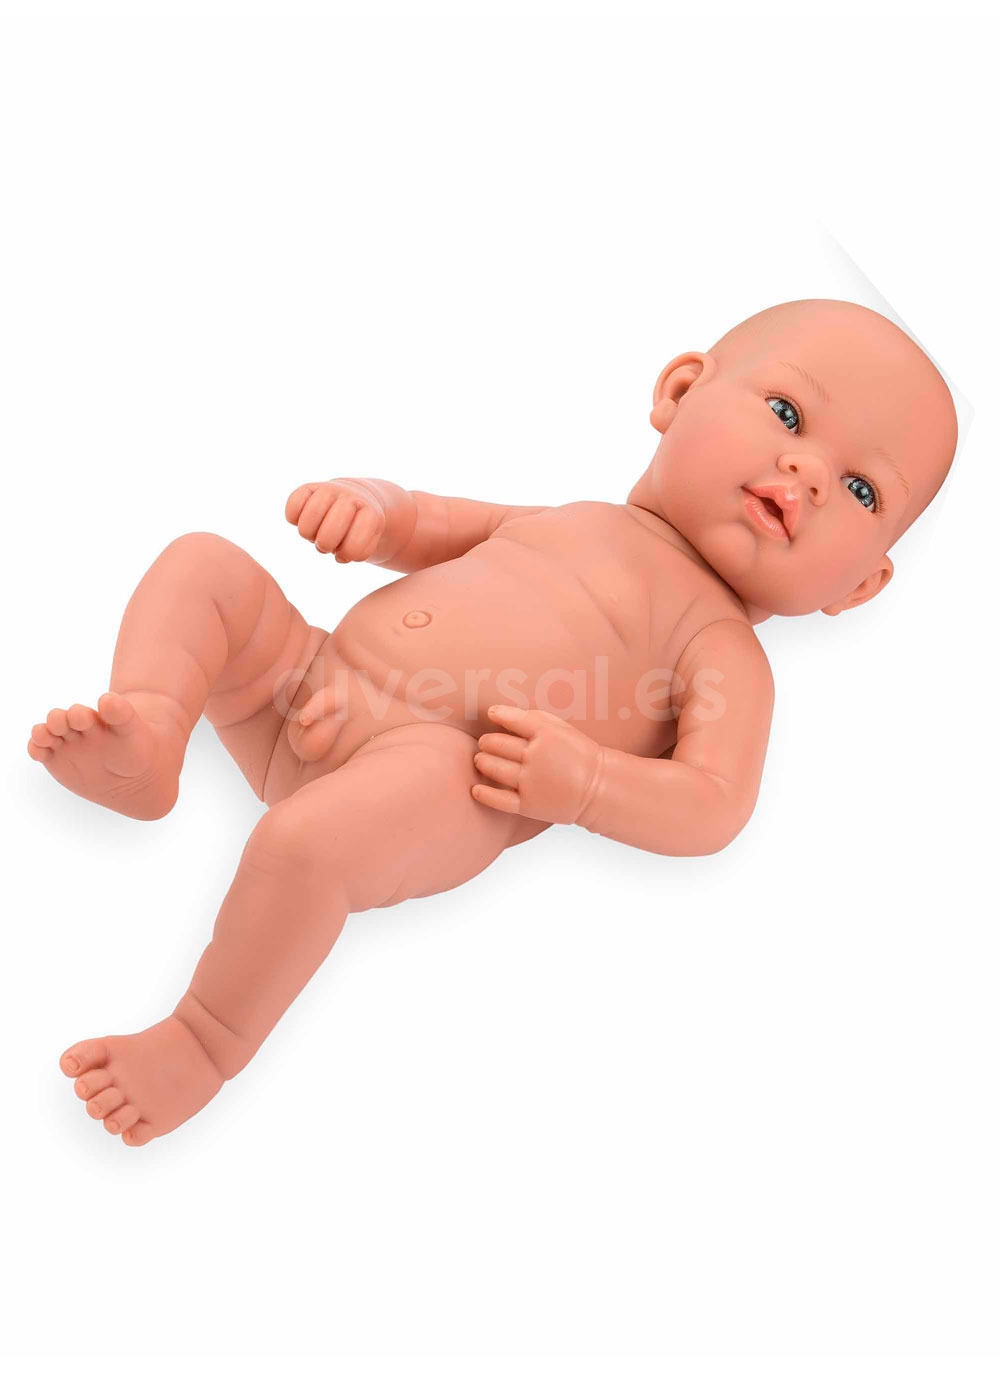 Real Bebe Bebe Poupee Nue 42cm Diversal Es Tienda De Munecas Juguetes Y Disfraces